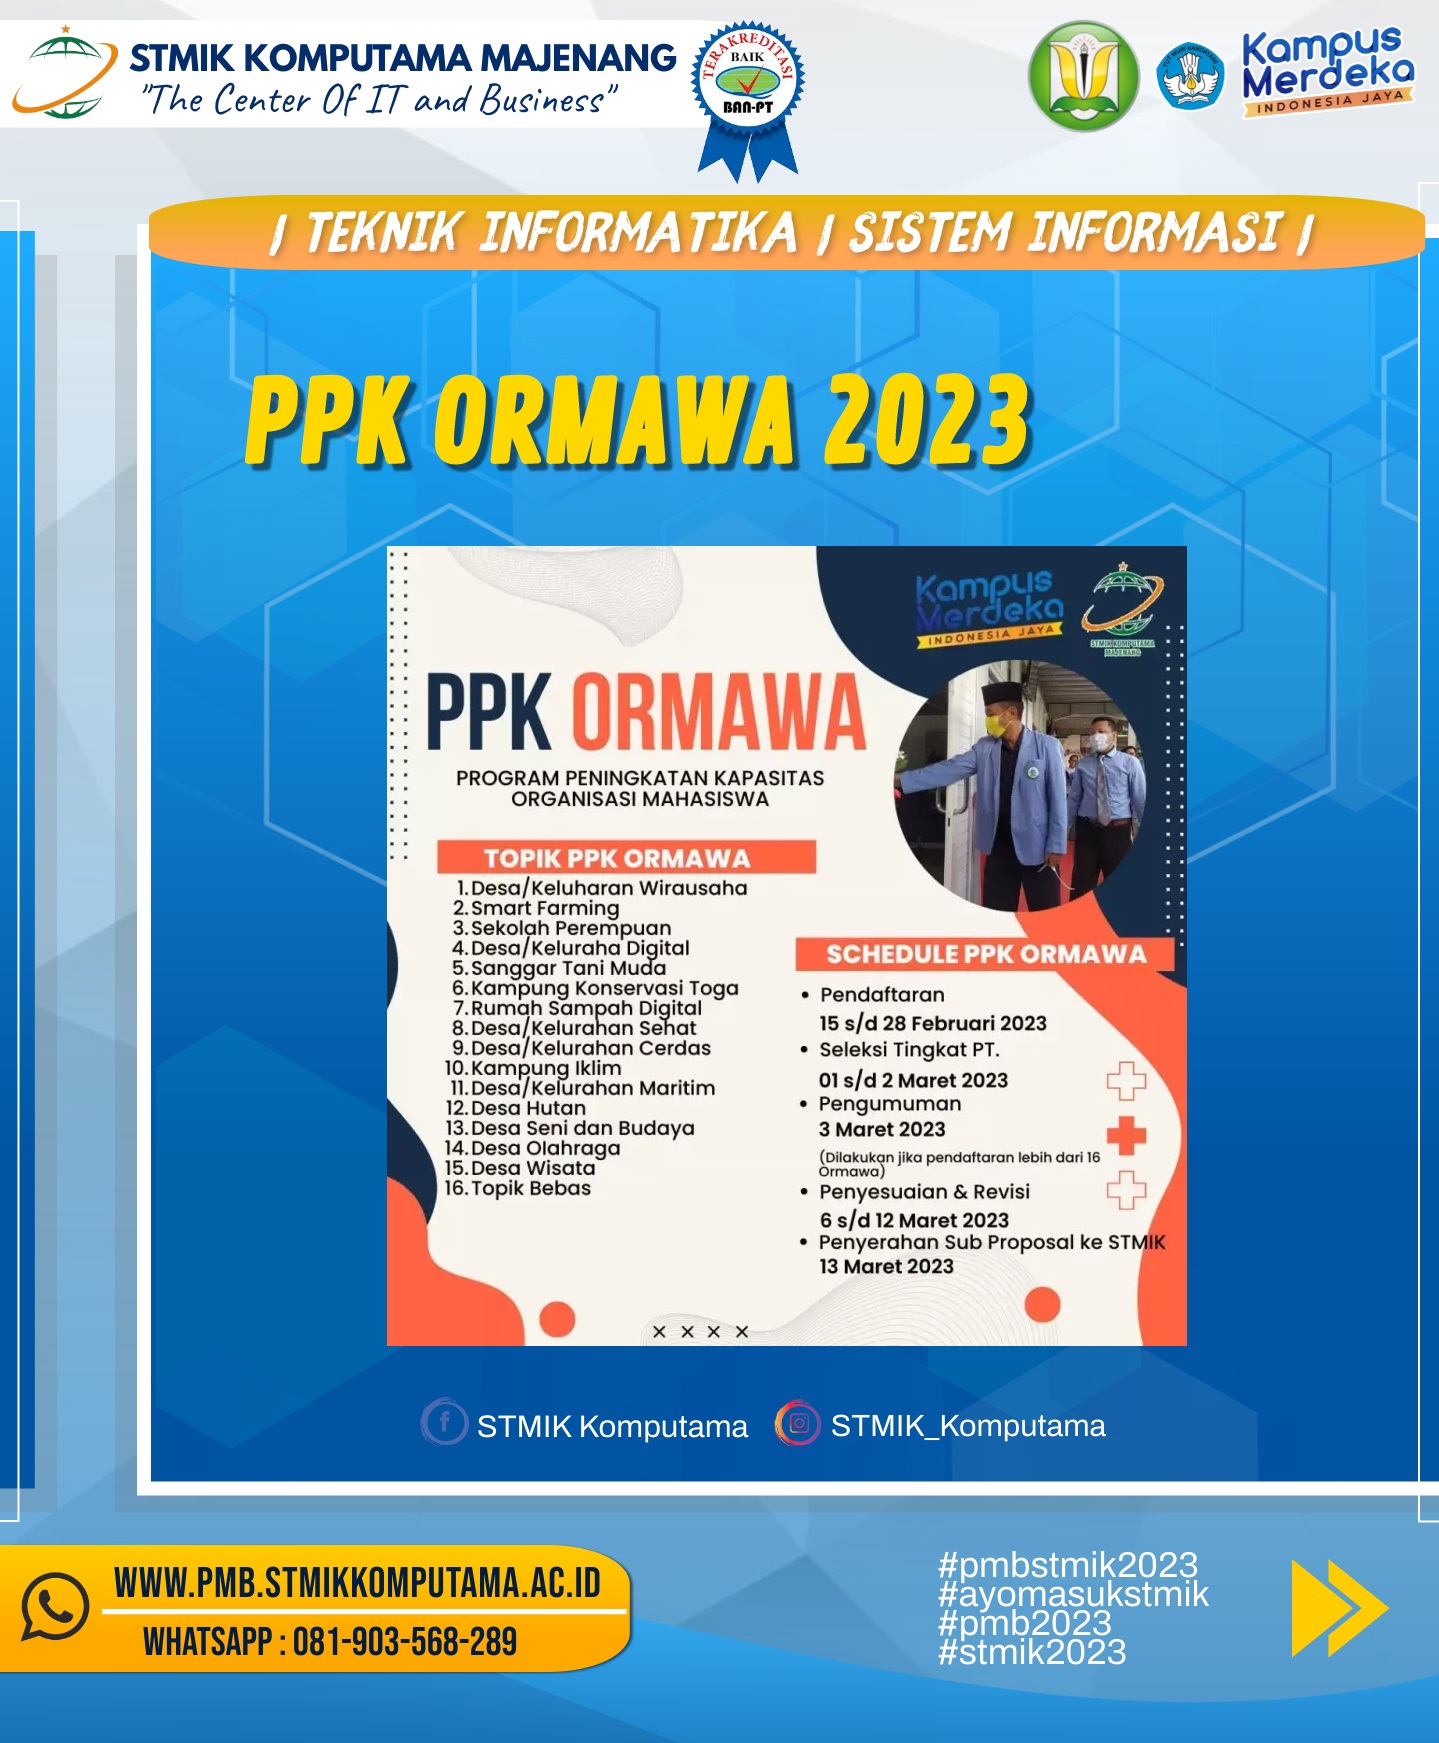 PPK ORMAWA 2023 (Program Peningkatan Kapasitas Organisasi Mahasiswa)